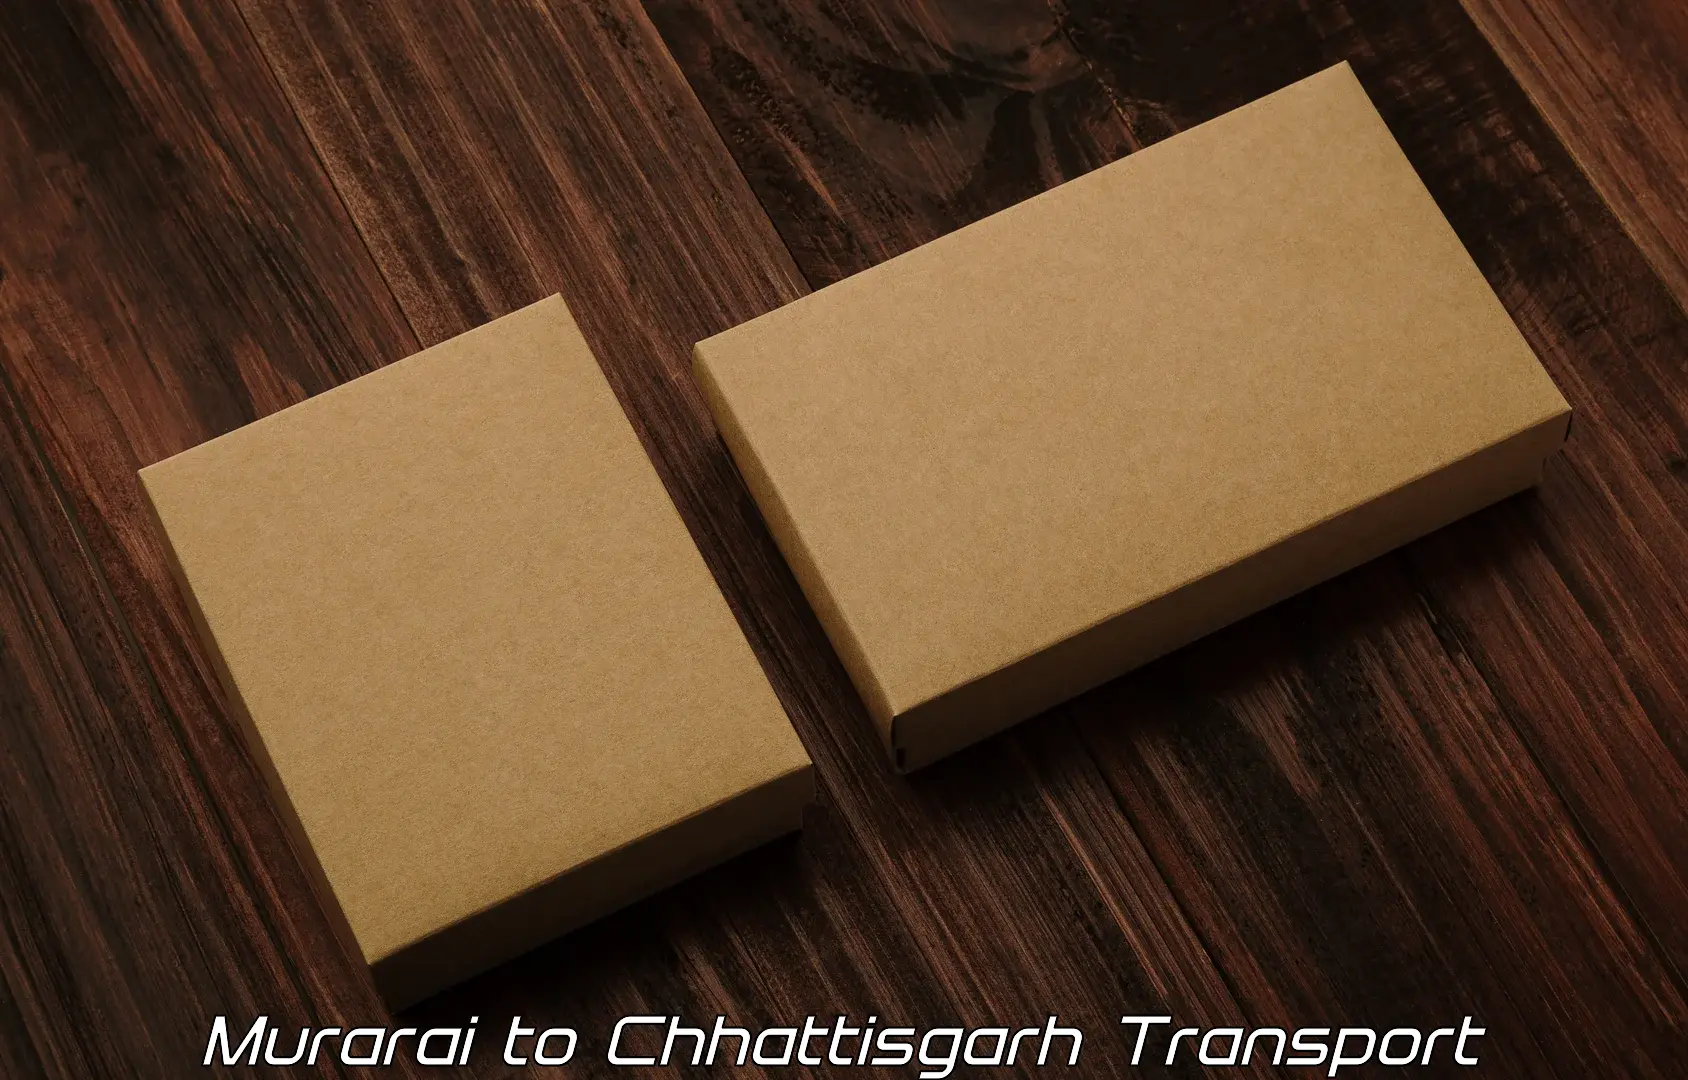 Transport in sharing Murarai to Bijapur Chhattisgarh